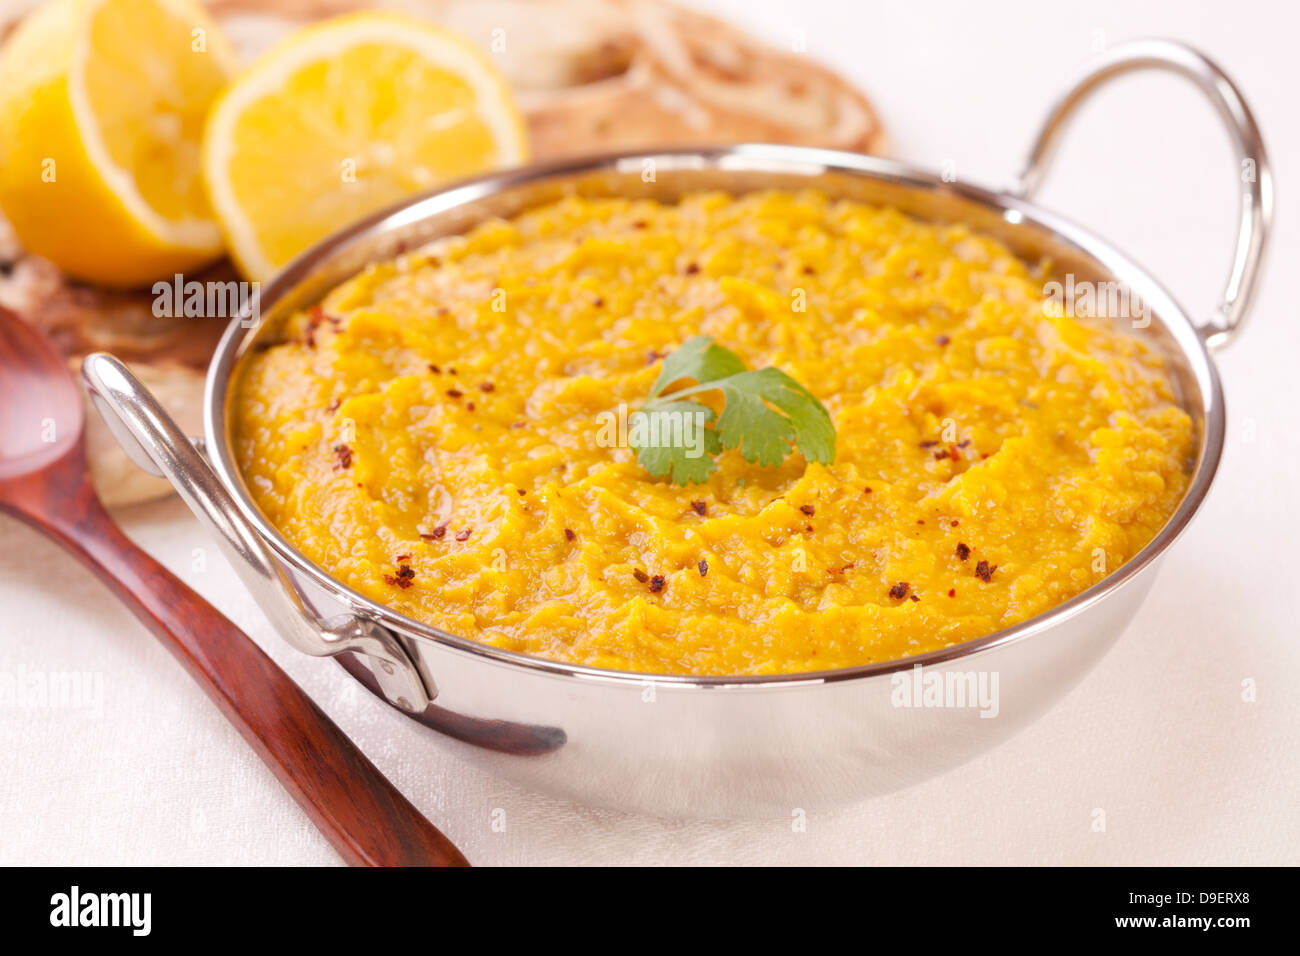 Dhal cibo indiano - un piatto di Balti riempito con gustosi dhal indiana o dal, con pane naan e limone in background. Foto Stock